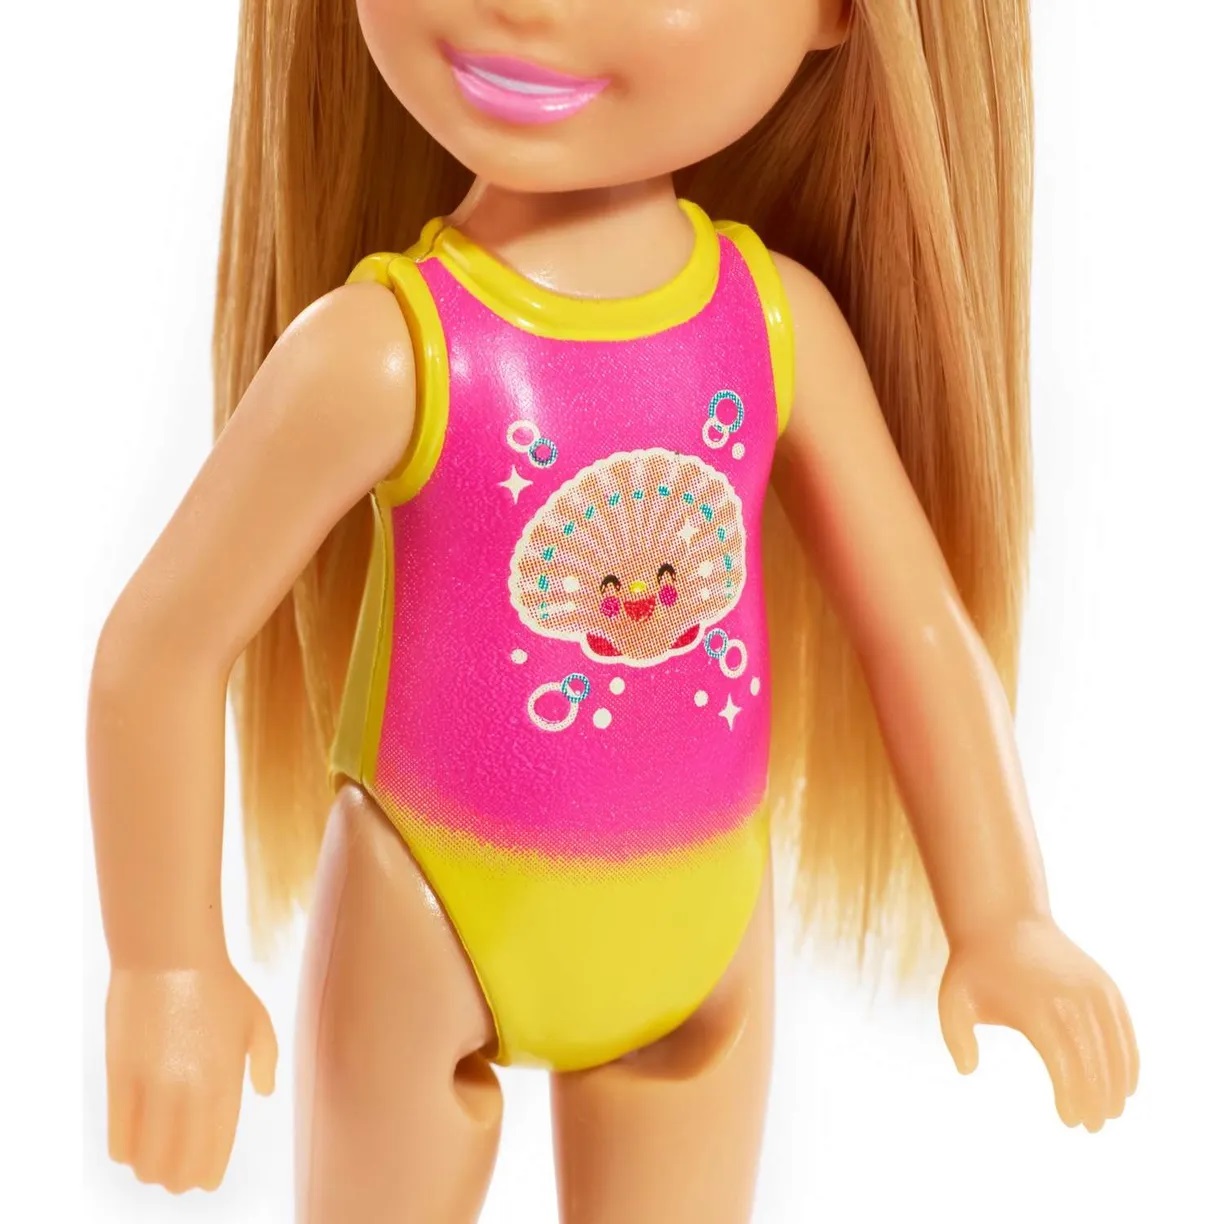 Кукла Barbie GLN70 Челси в купальнике